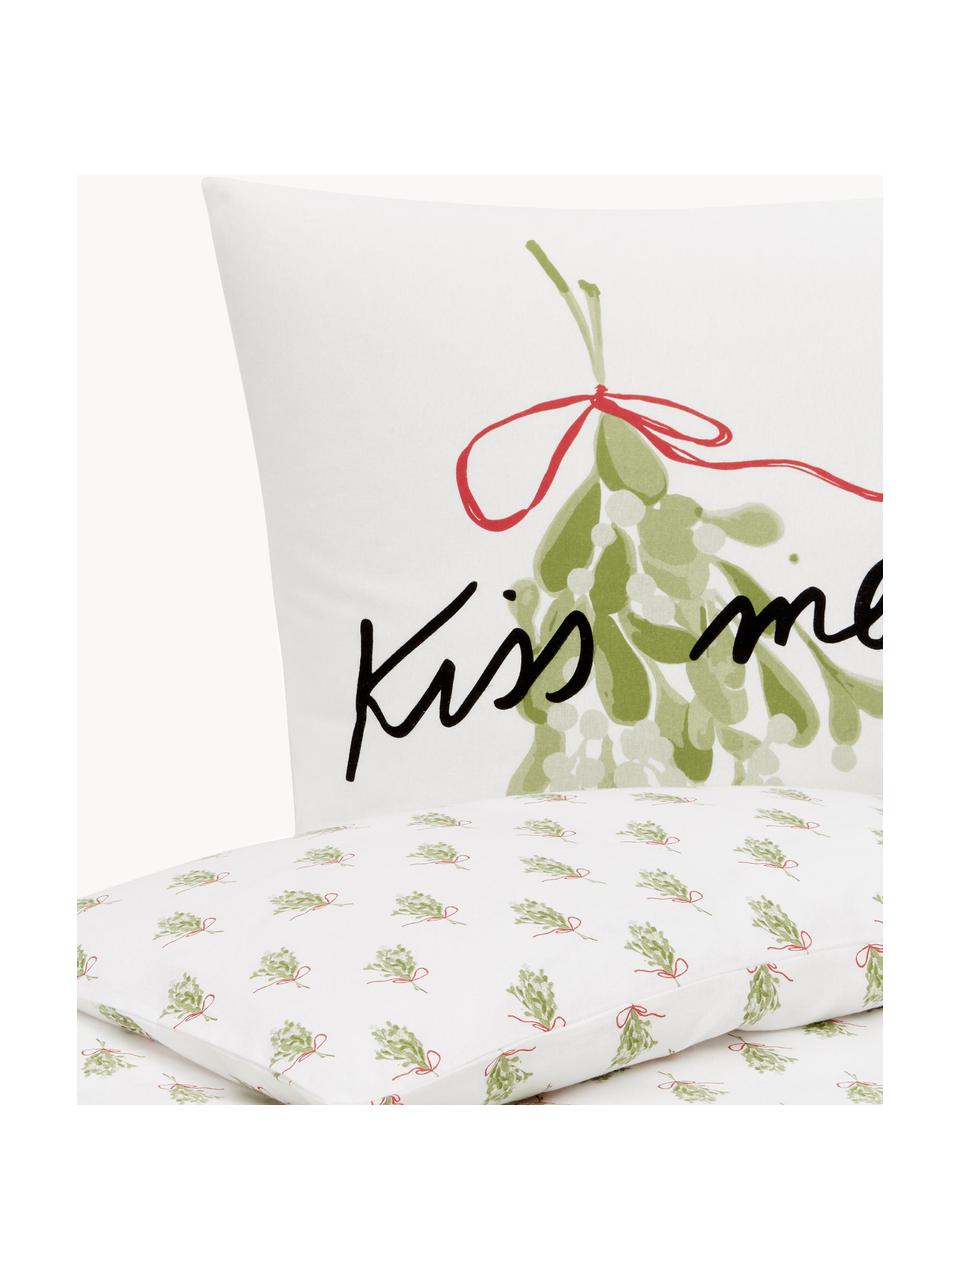 Designer Flanell-Bettwäsche Kiss Me von Kera Till, Webart: Flanell Flanell ist ein k, Weiss, Hellgrün, 135 x 200 cm + 1 Kissen 80 x 80 cm